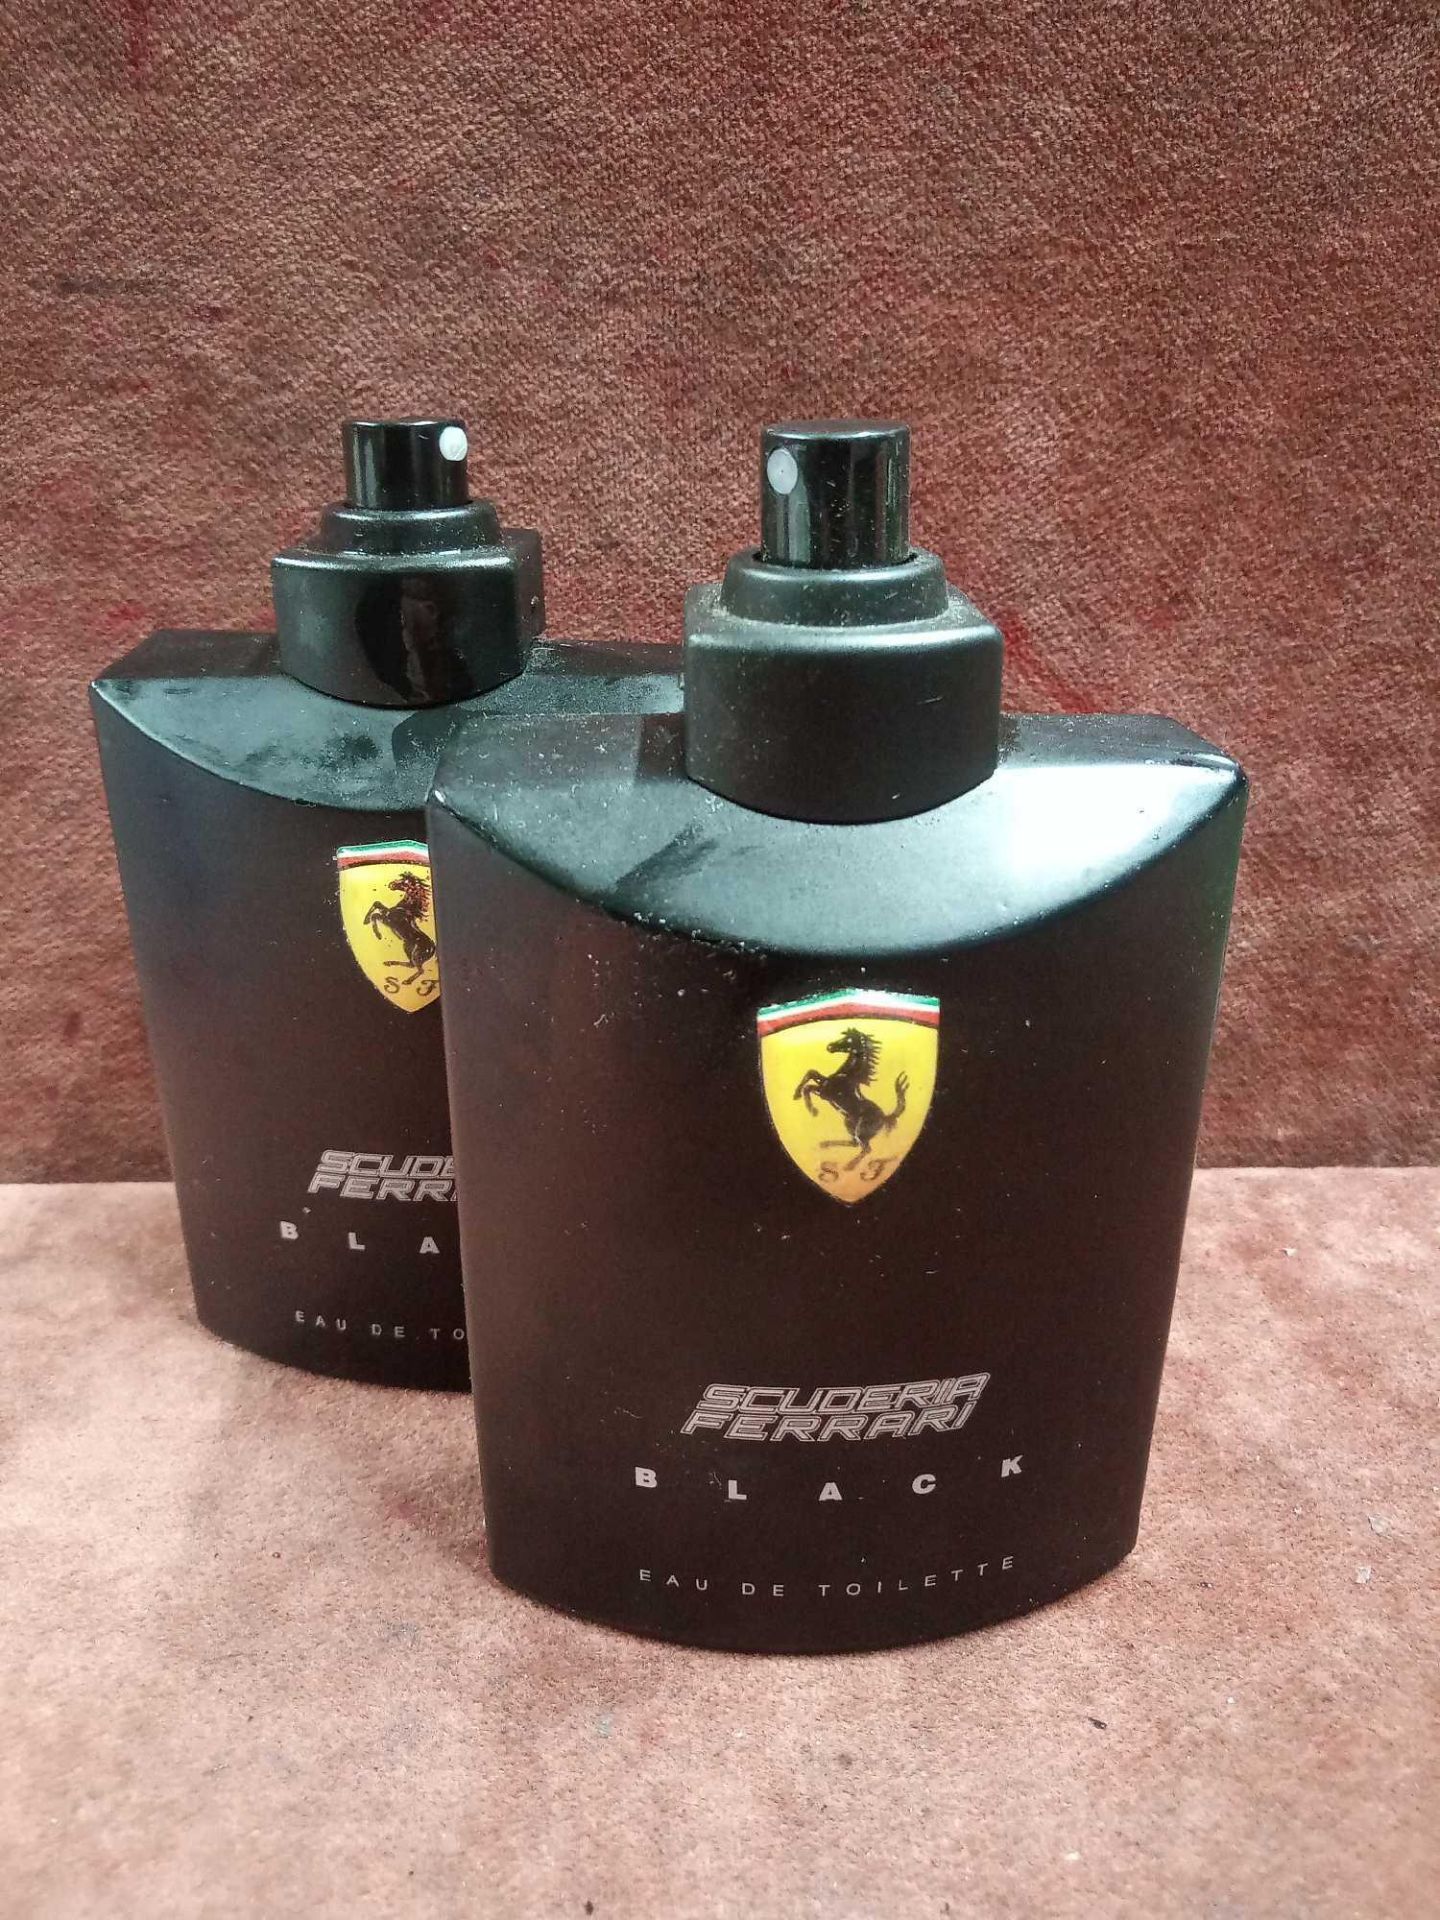 (Jb) RRP £75 Lot To Contain 2 Unboxed 125Ml Tester Bottles Of Ferrari Scuderia Black Eau De Toilette